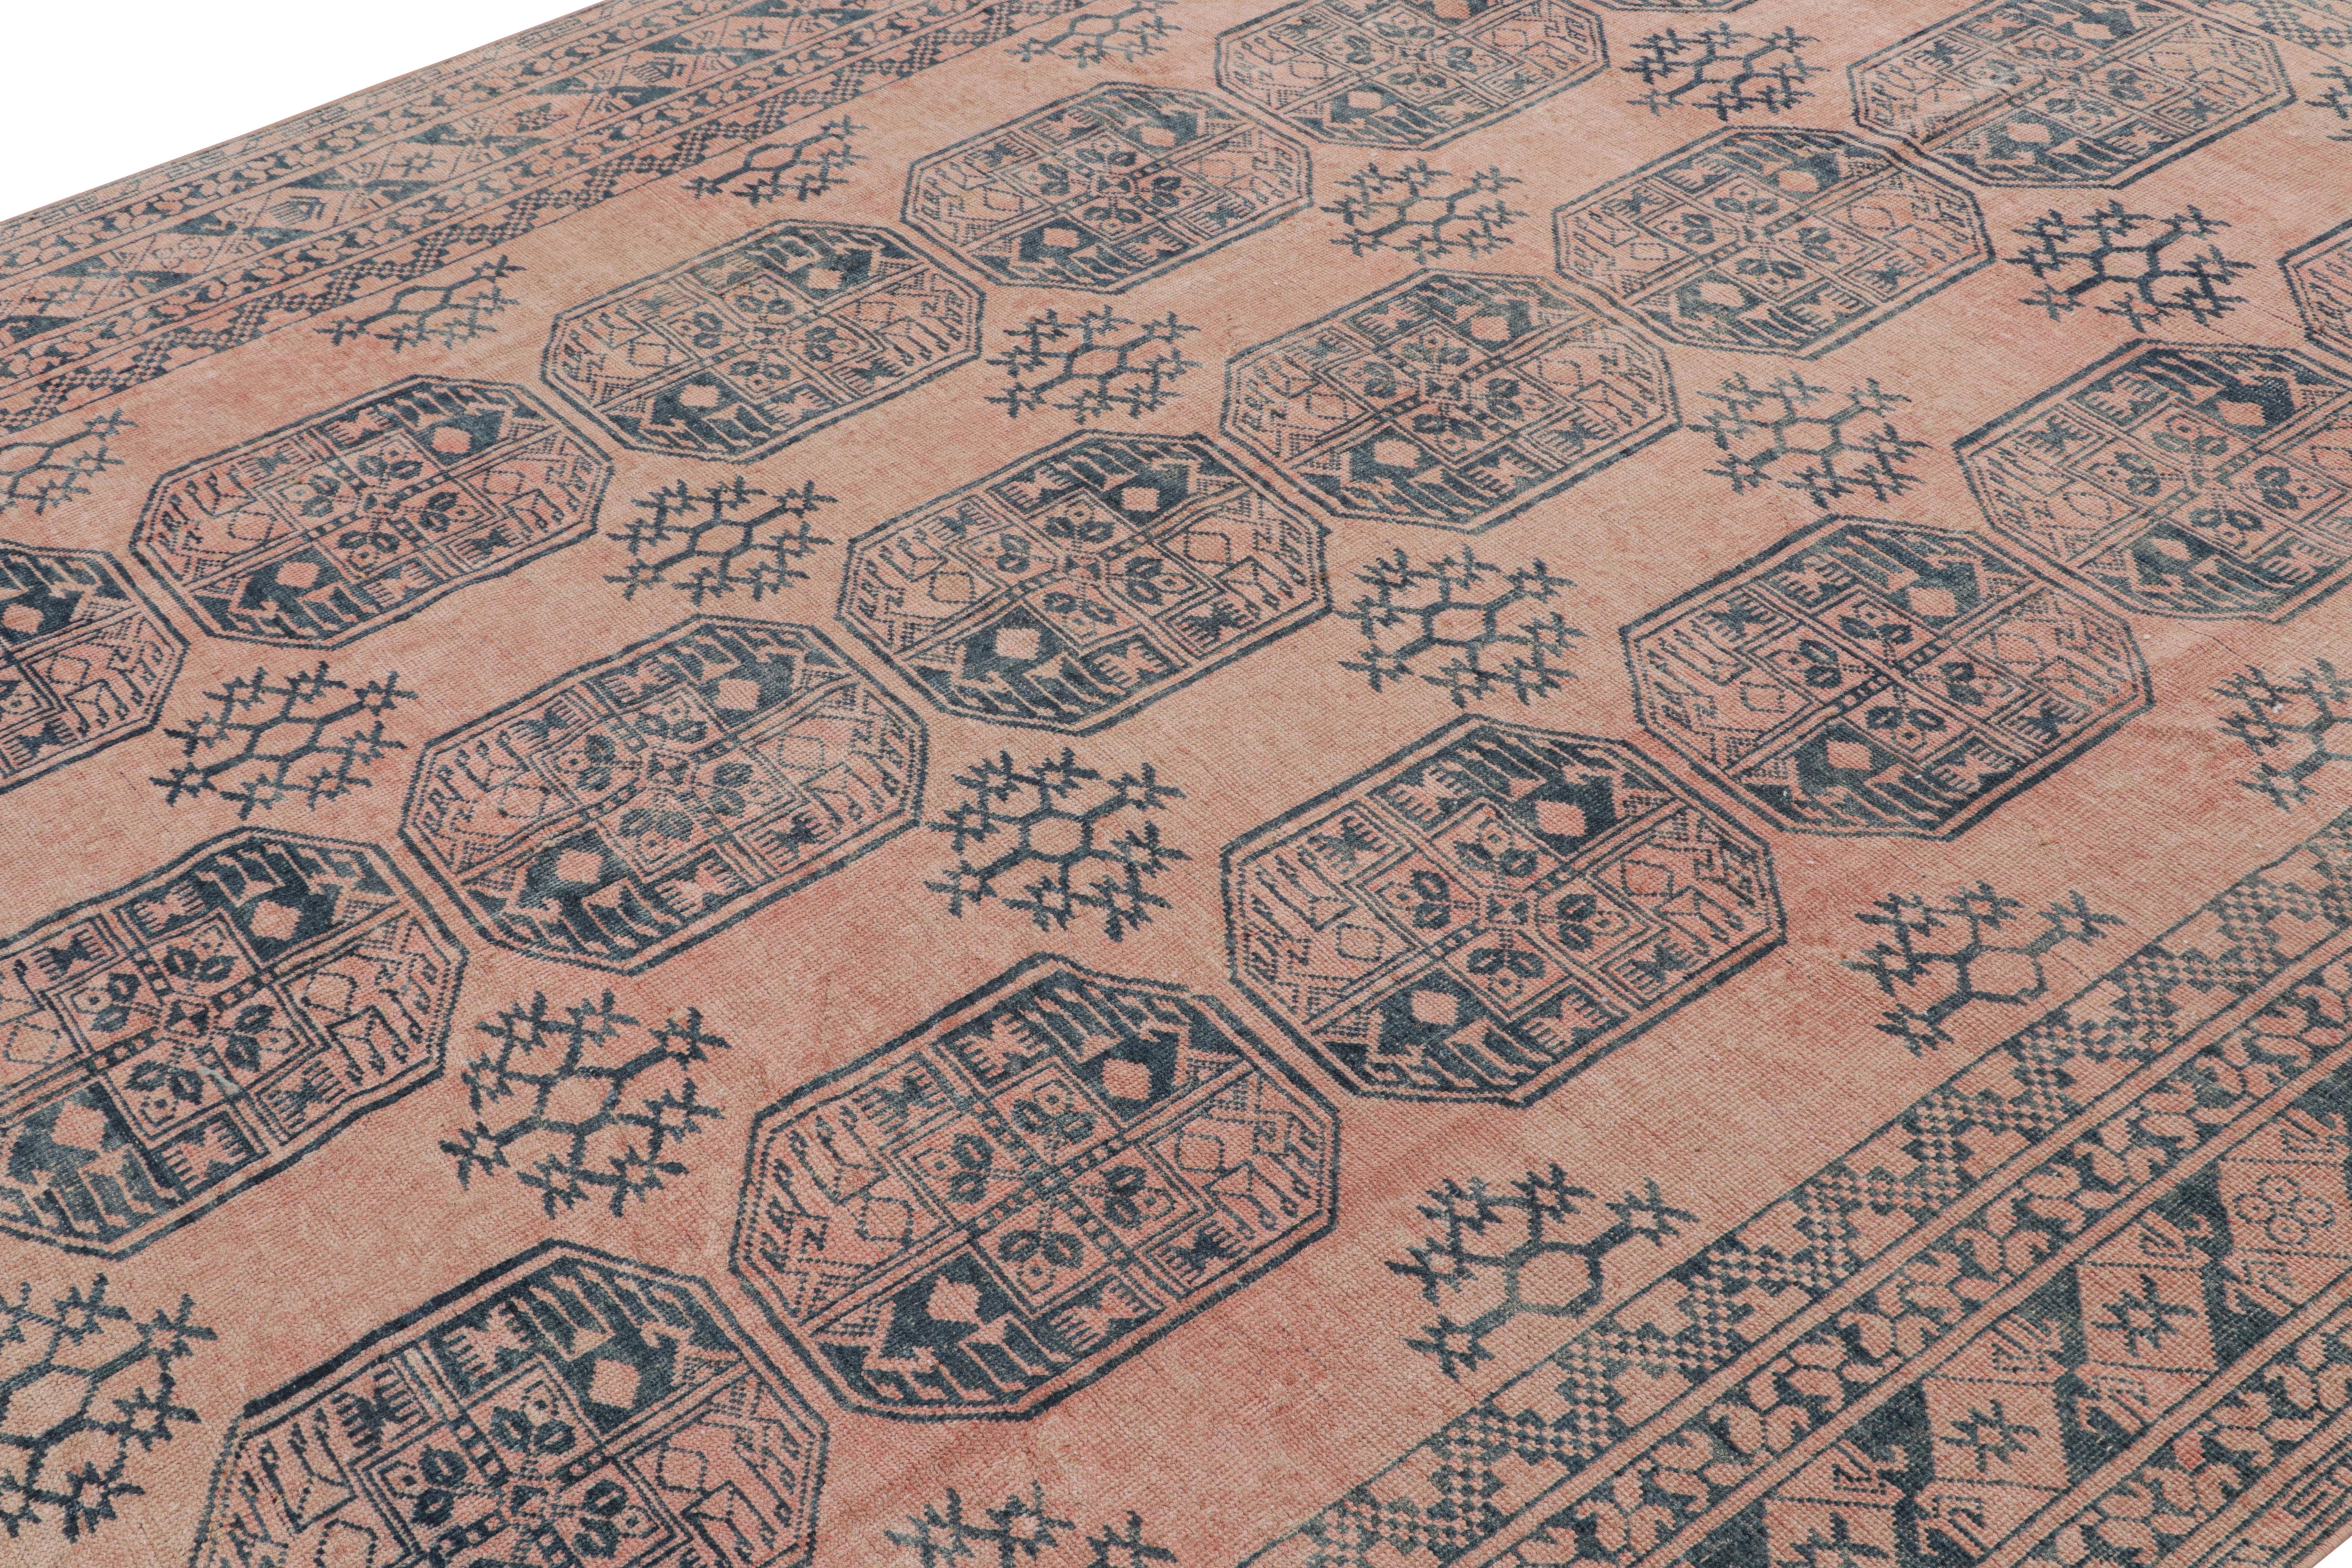 Dieser 8x10 große Vintage-Teppich ist vermutlich ein seltener Ersari-Teppich aus der Mitte des Jahrhunderts, handgeknüpft aus Wolle und in der Türkei um 1950-1960 entstanden.

Über das Design:

Die Ersari sind ein Unterstamm der Turkmenen, der für